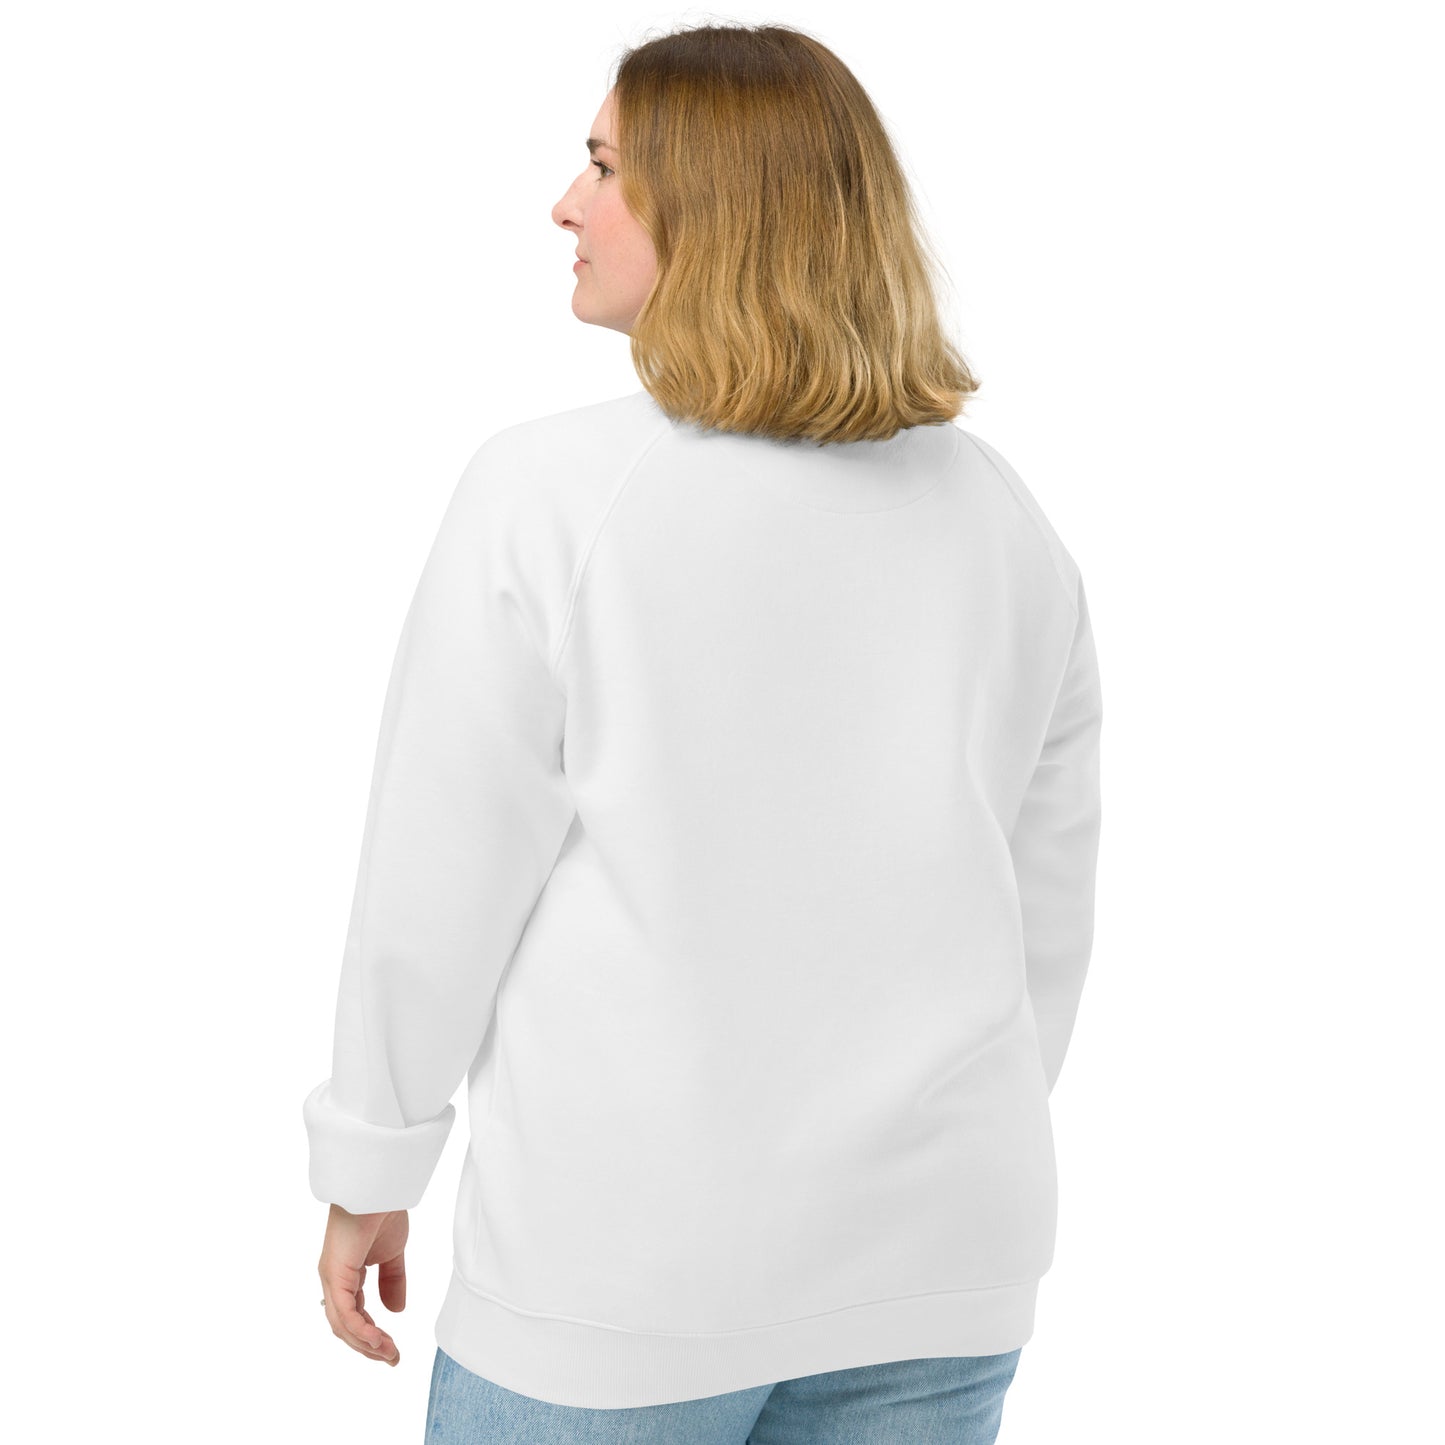 Unisex organic raglan sweatshirt S-3XL | Sahasrara chakra